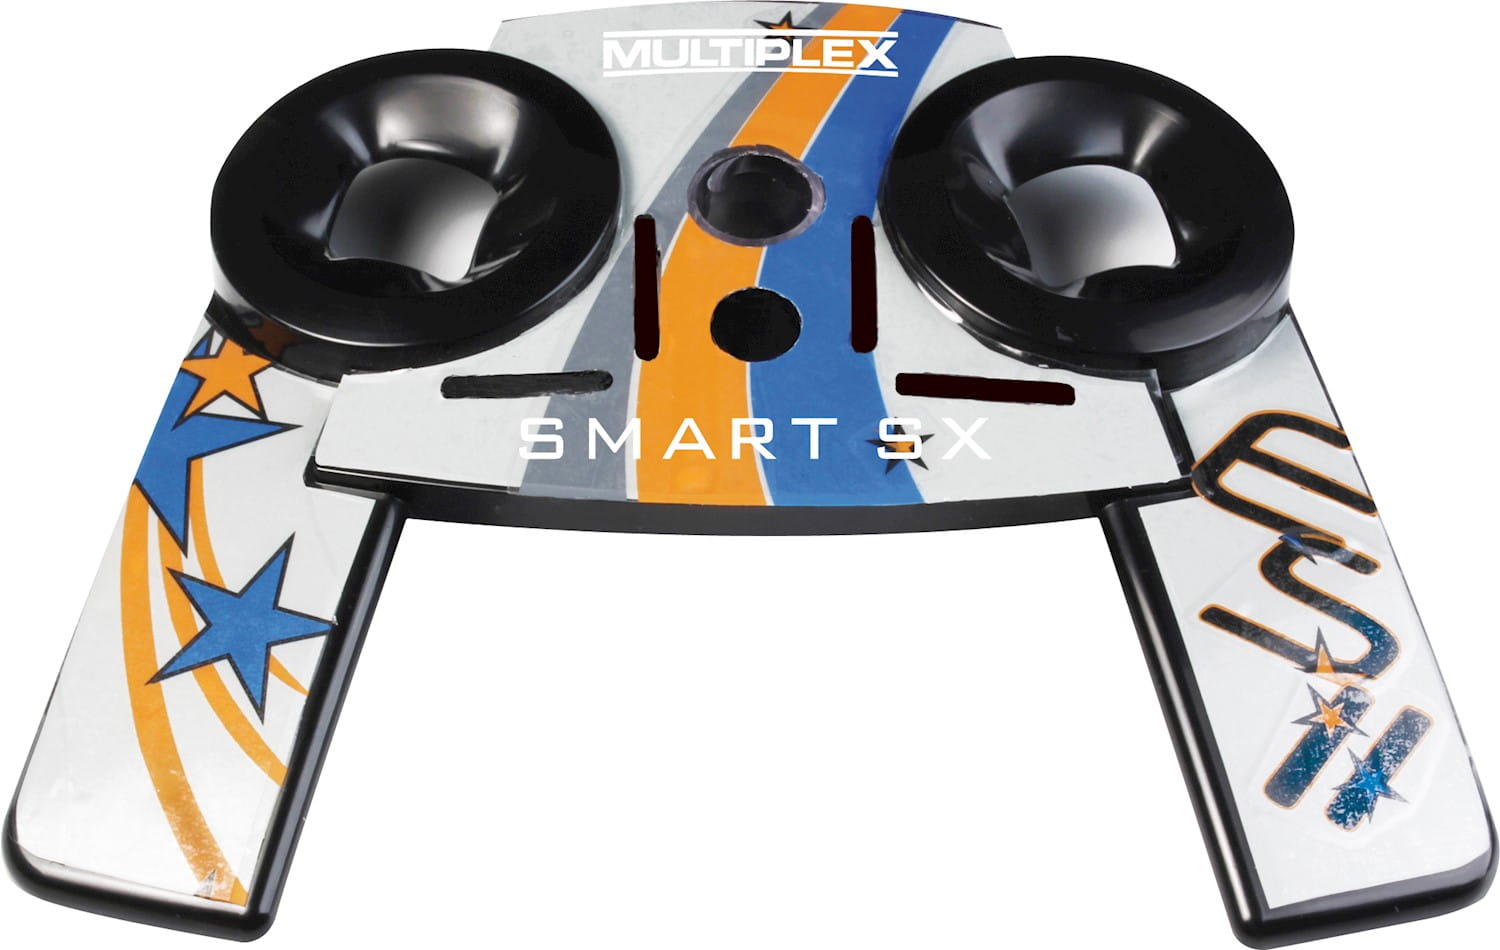 Multiplex Dekorbogen Smart SX Dekor 1